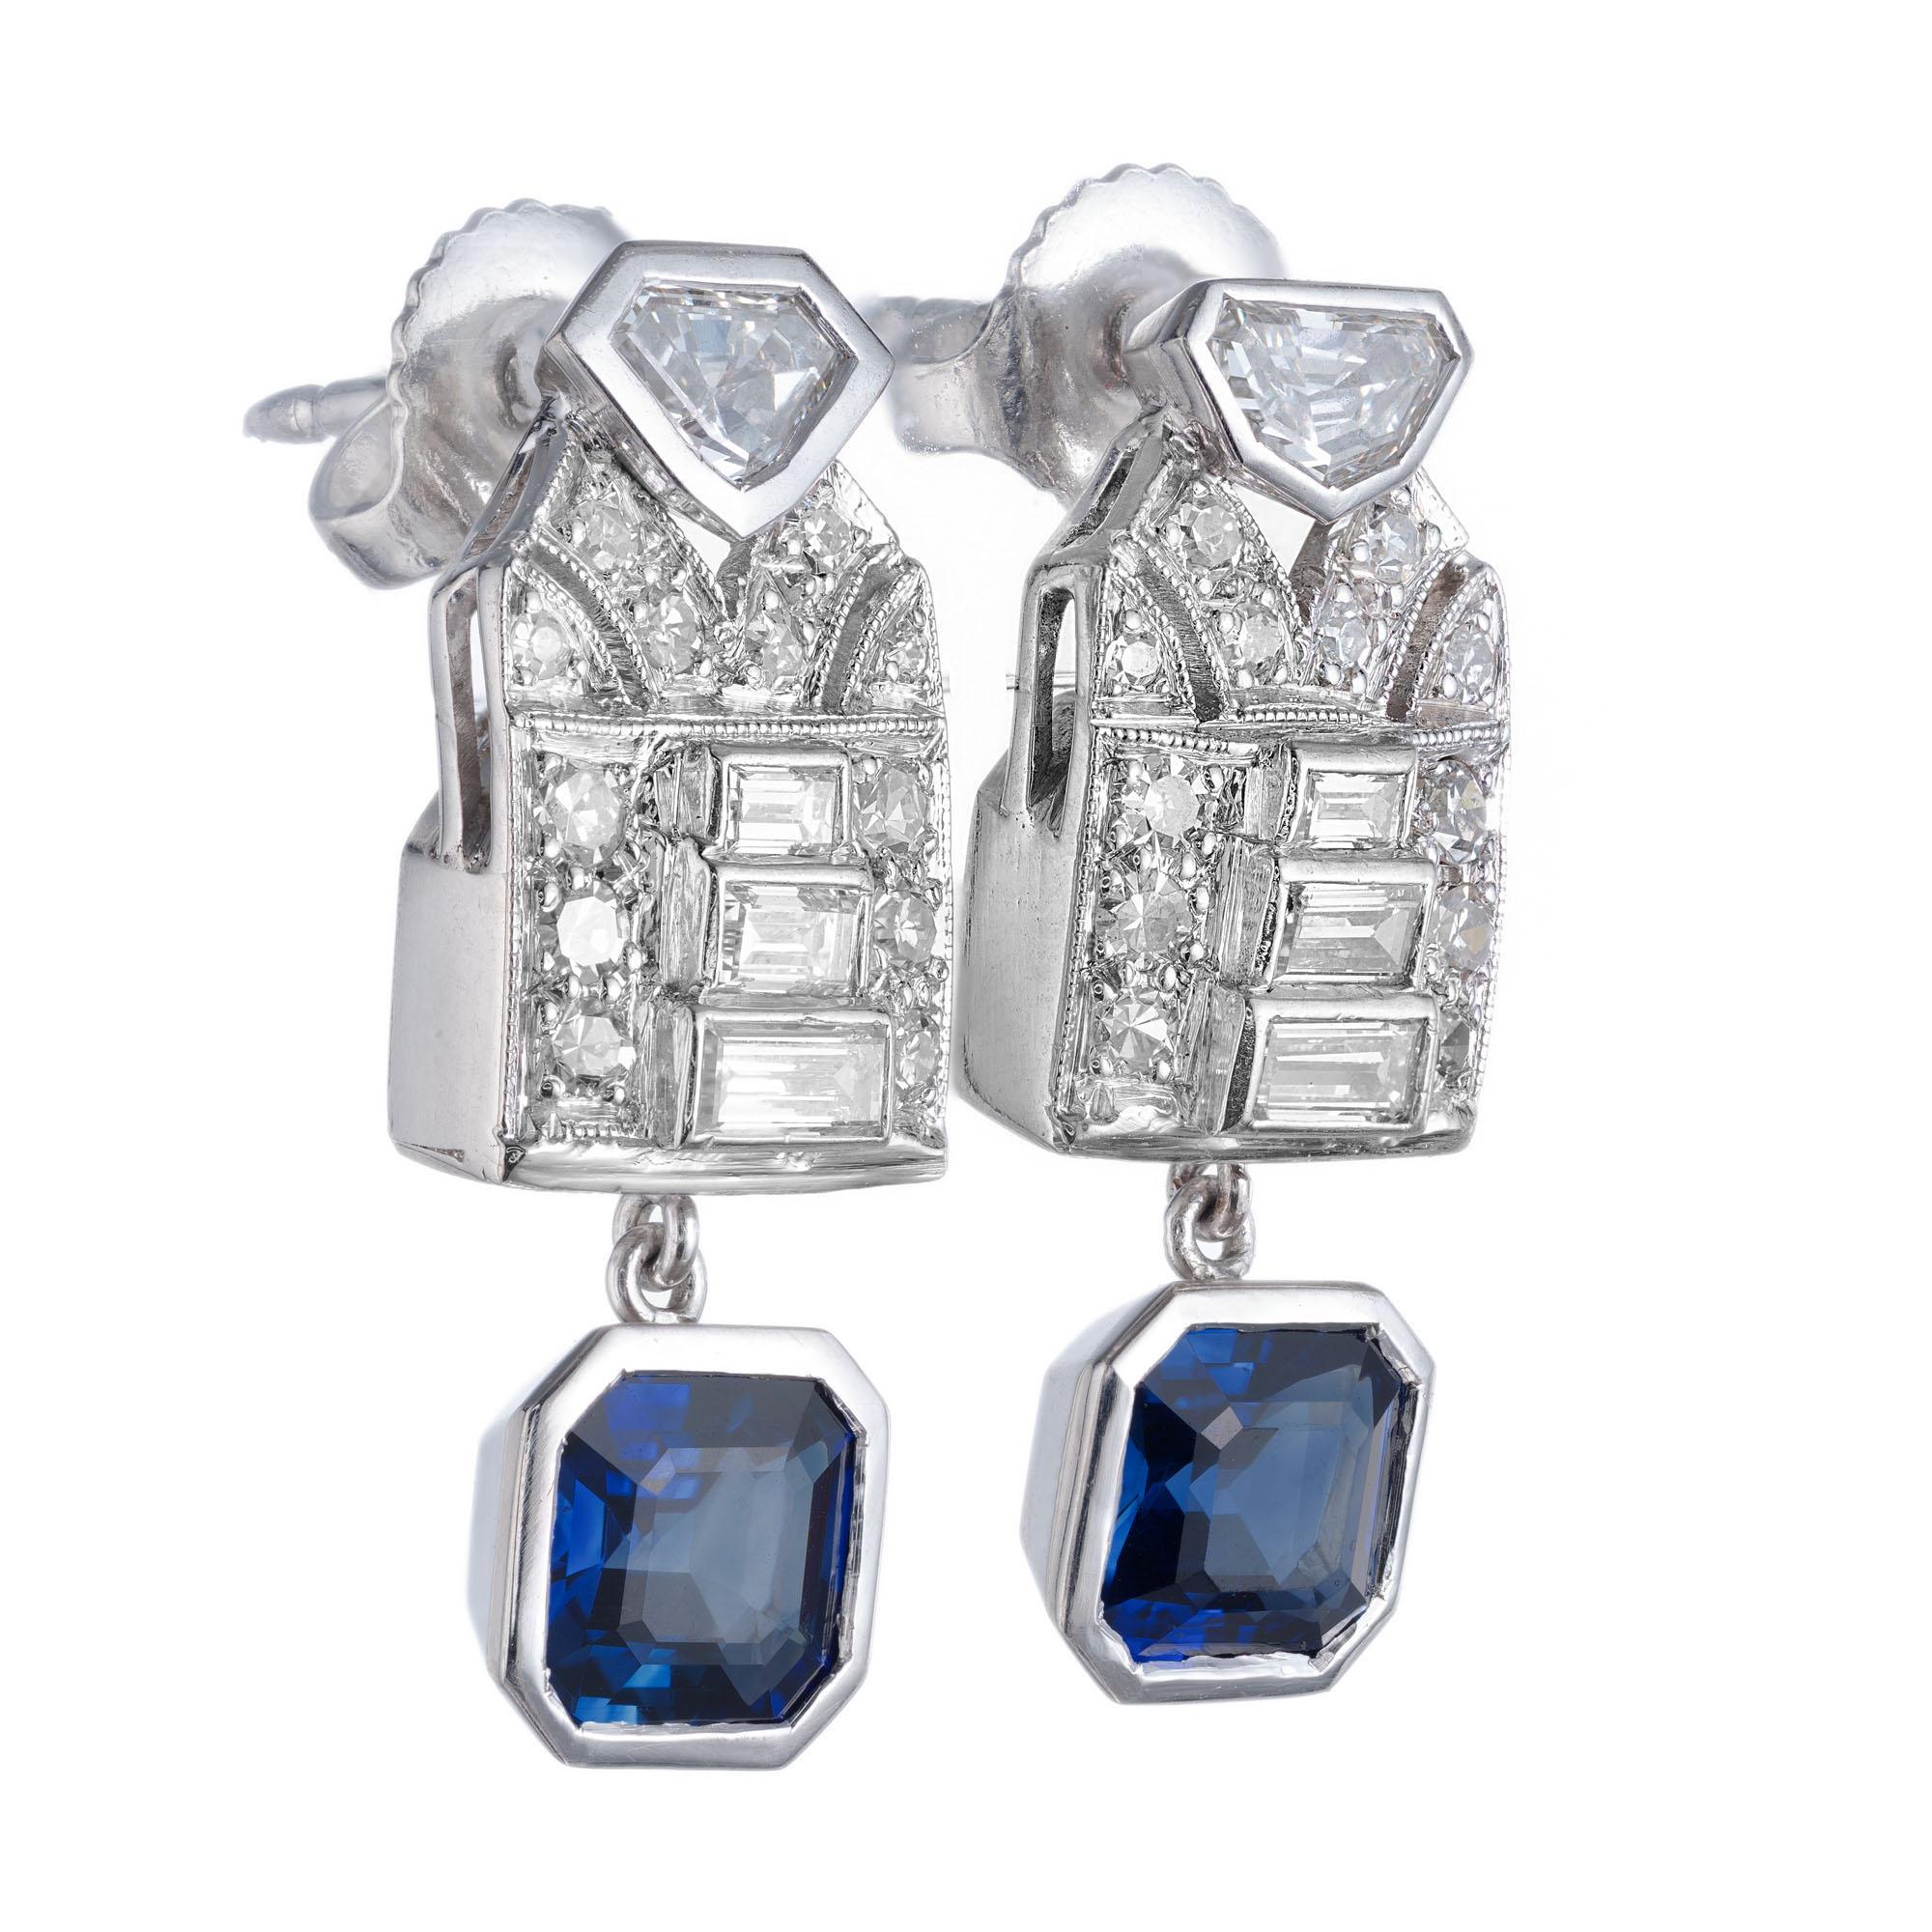 1915 Art-Deco-Ohrringe mit Saphiren und Diamanten. Besetzt mit Schild-, Baguette- und runden Diamanten in Platin und blauen, achteckigen Saphiren im Stufenschliff in der Lünette. Beide GIA zertifiziert natürlichen keine Hitze.

2 achteckige blaue